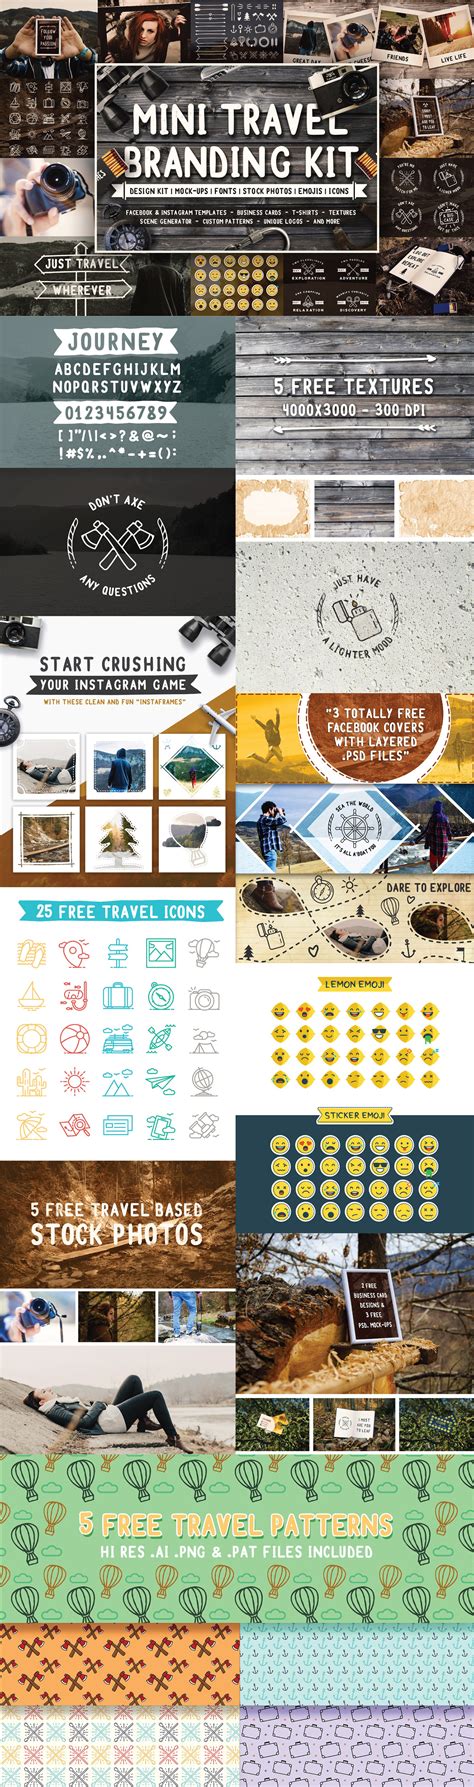 free mini travel branding kit on behance